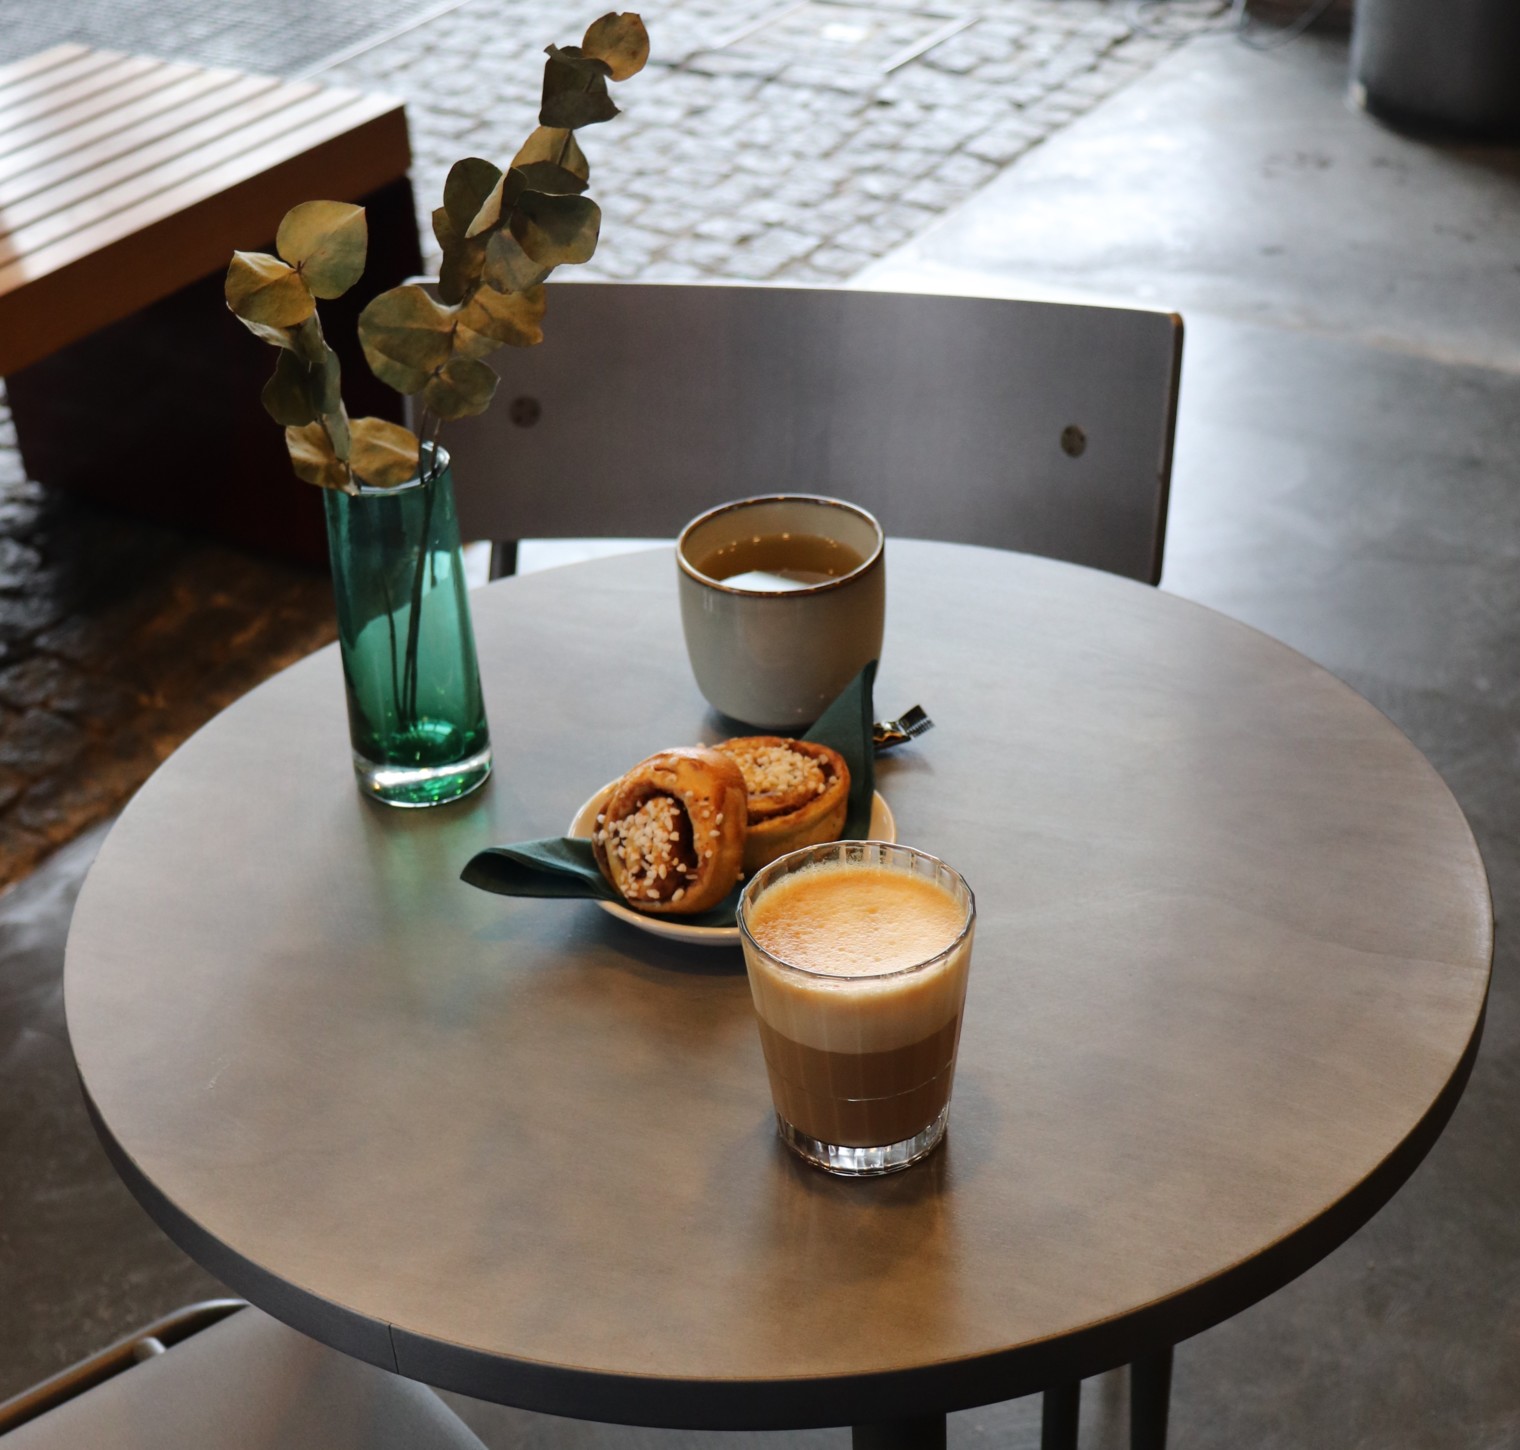 Pyöreä pöytä, jolle katettu kanelipullaa sekä kuppi kahvia ja teetä, pöytää koristaa lasimalja, jossa eukalyptuksen oksia.